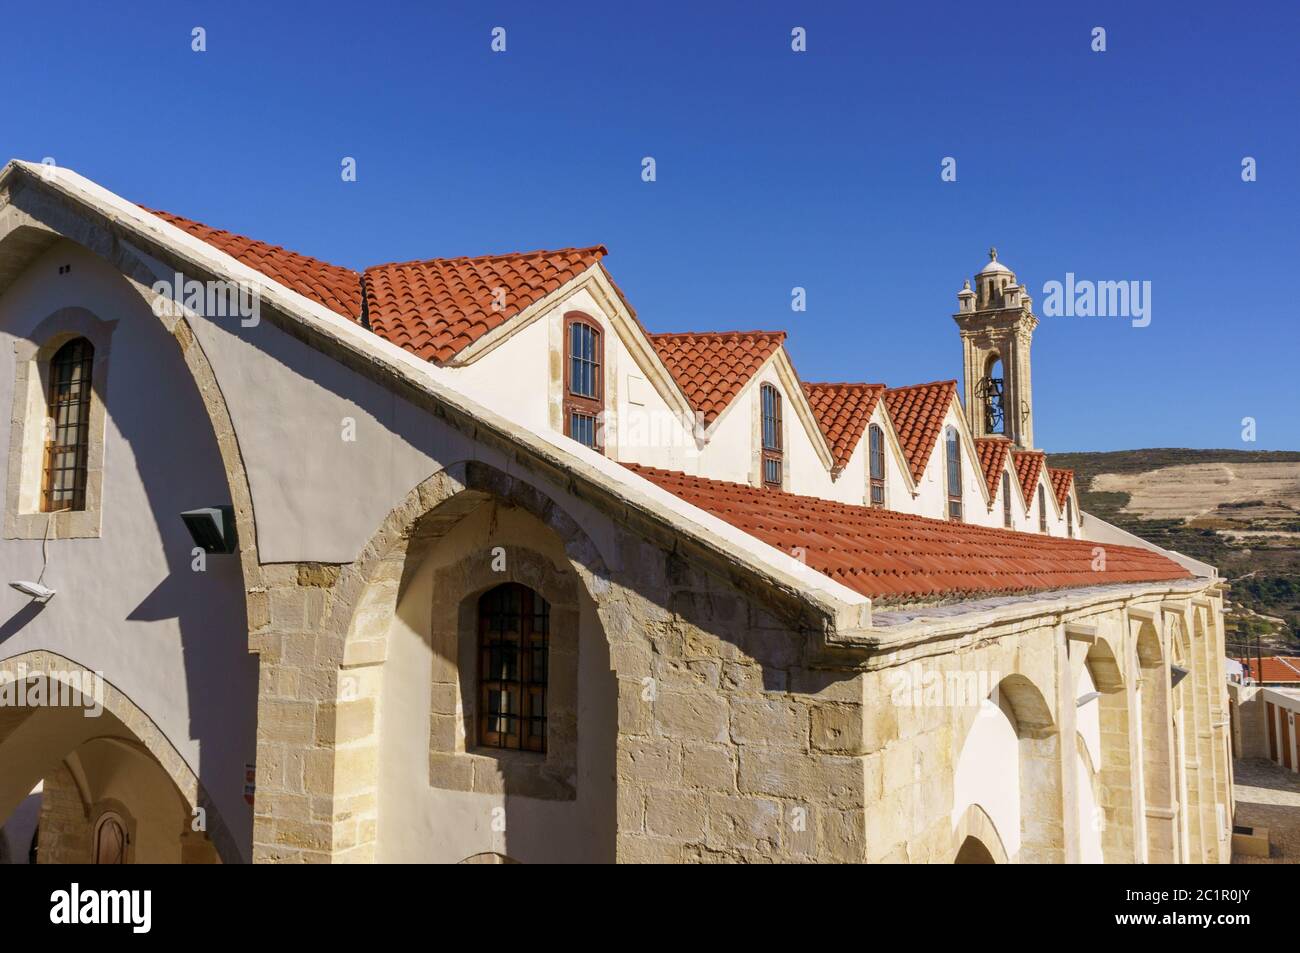 Vista ad alto angolo delle tegole arancioni e dei tetti della città vecchia con la cima del suo caratteristico campanile chiaramente visibile Foto Stock